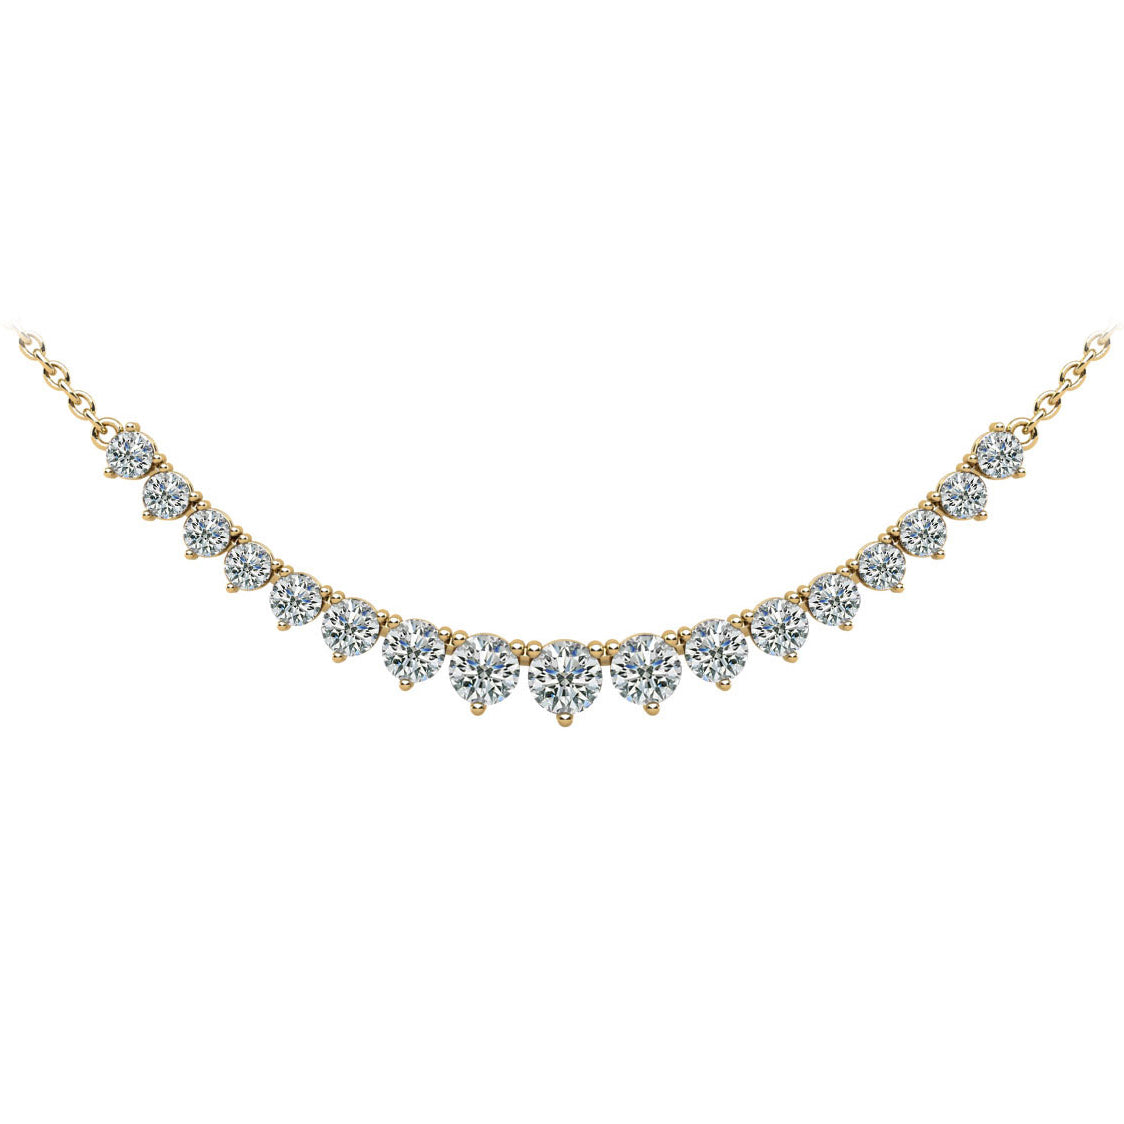 Diamond Row Necklace - 1ct